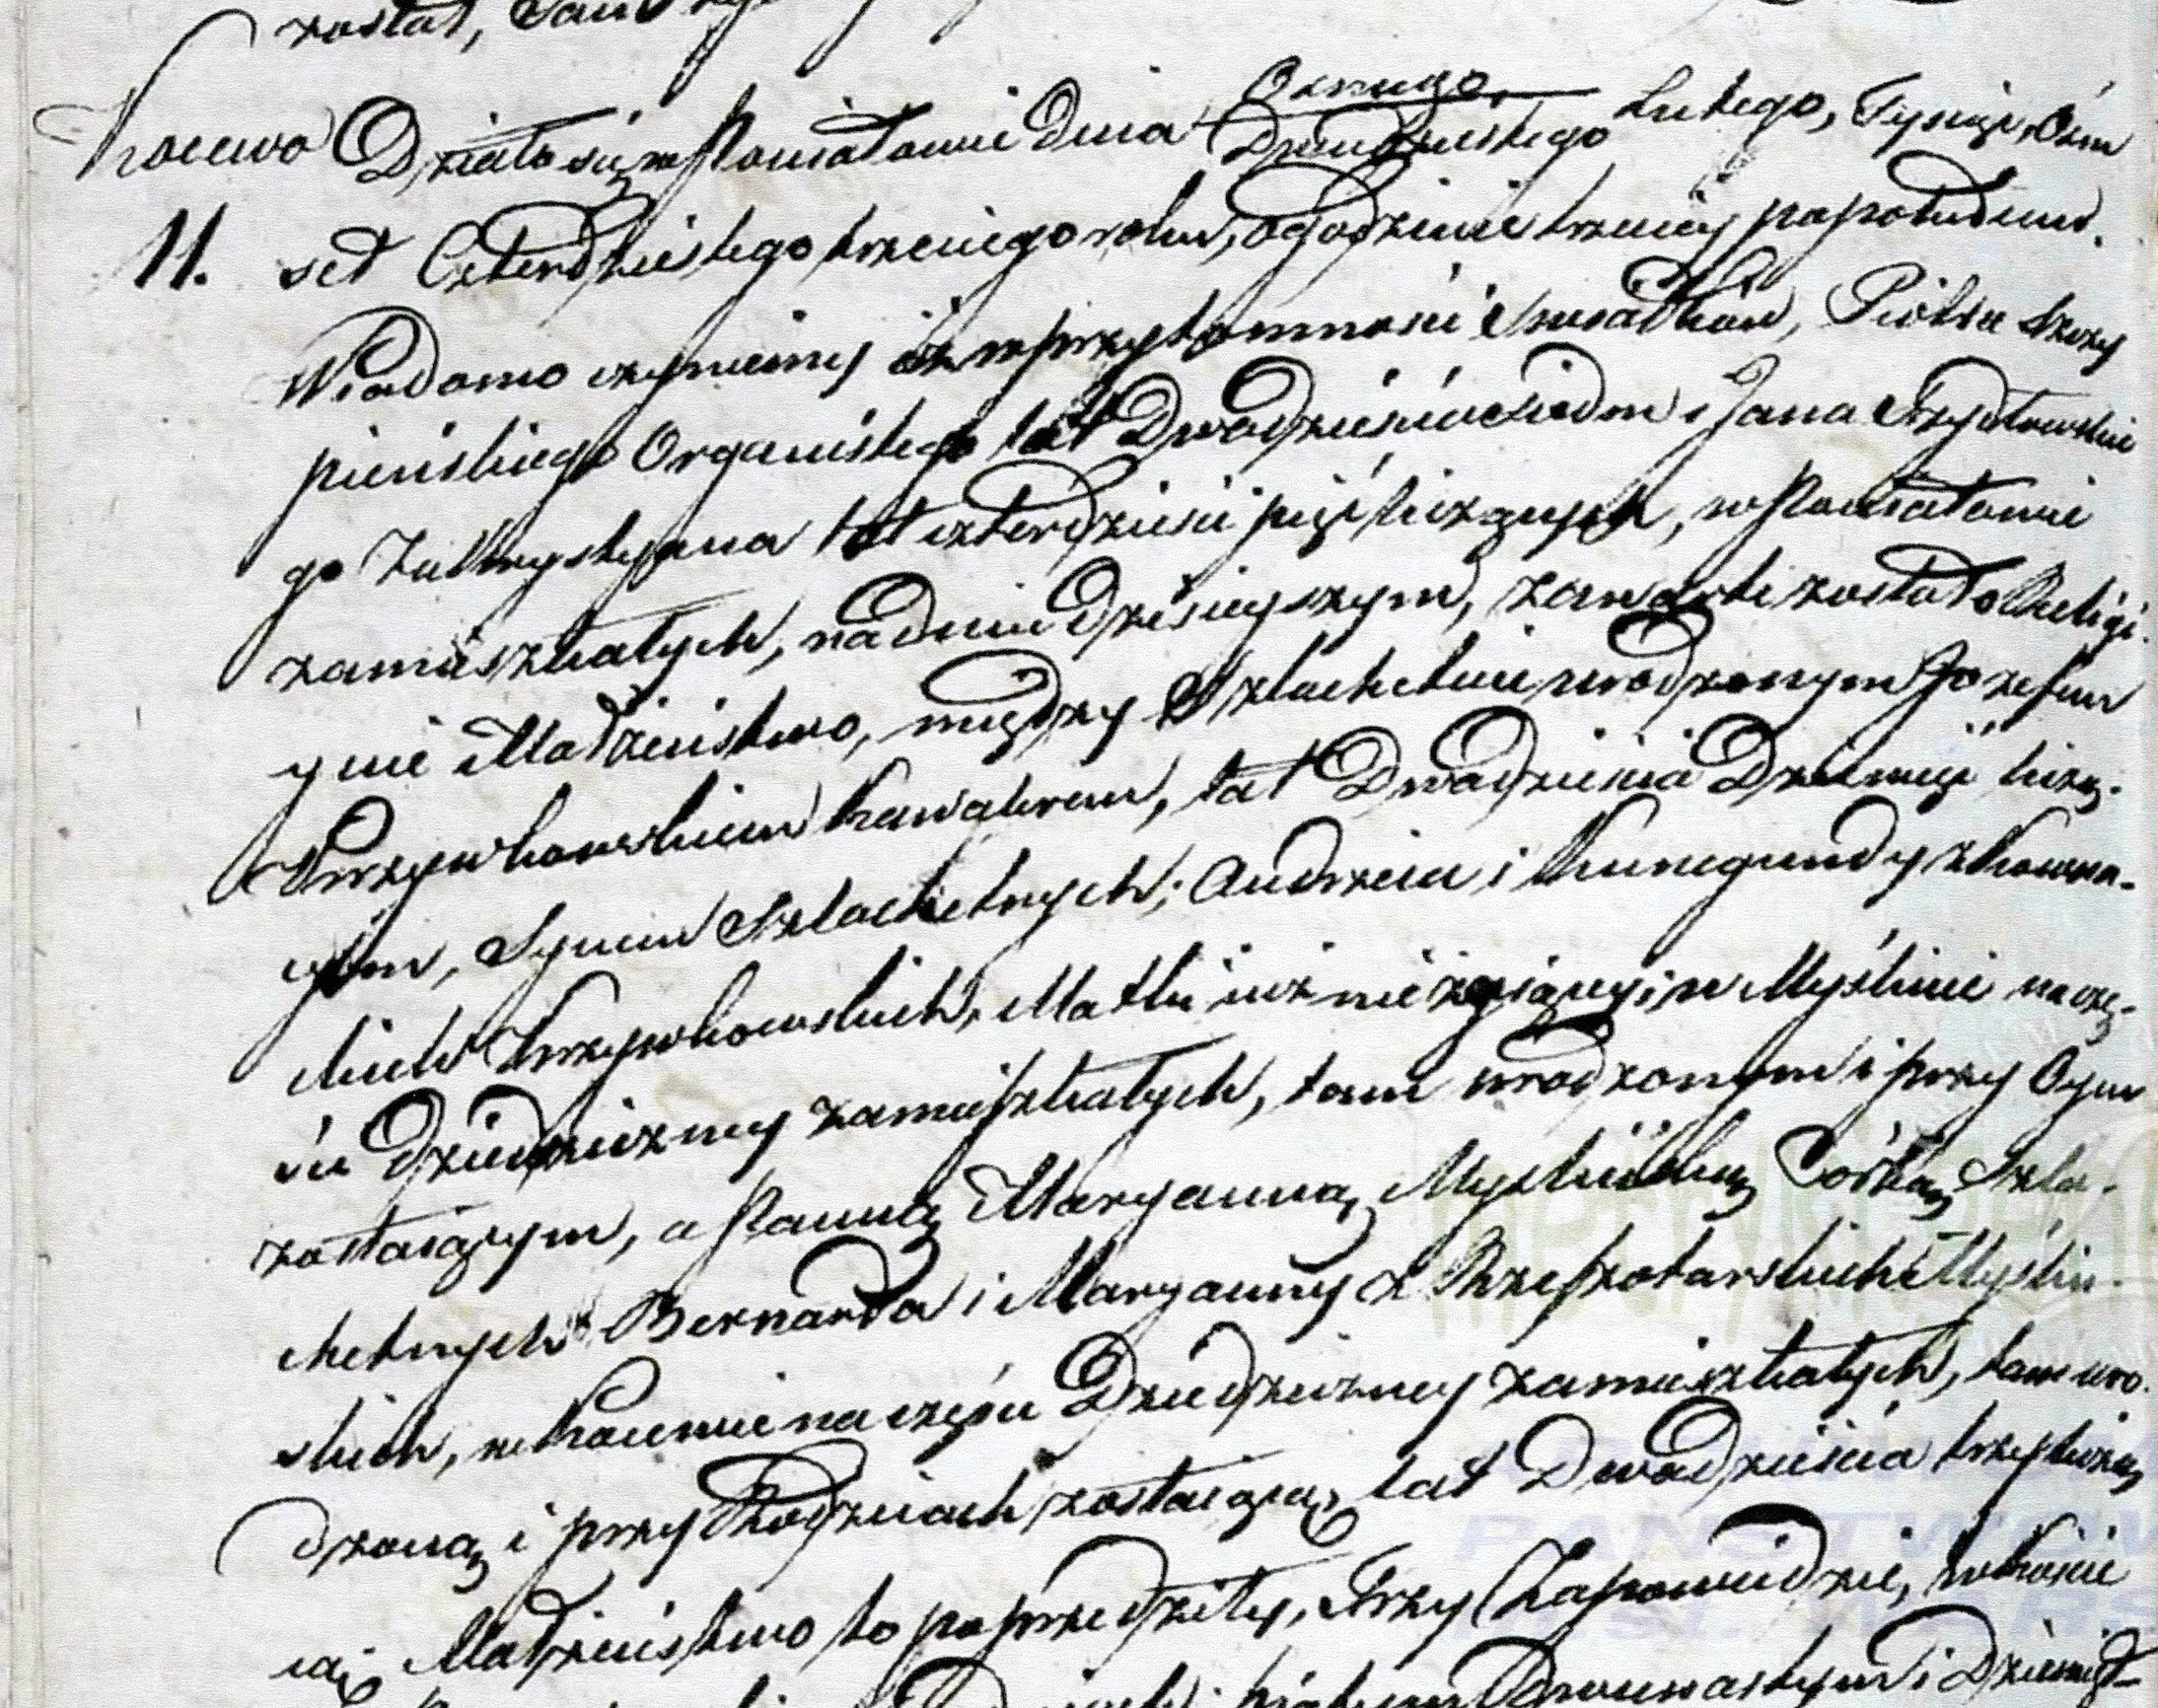 Józef_Krzywkowski_Marriage 1843.jpg